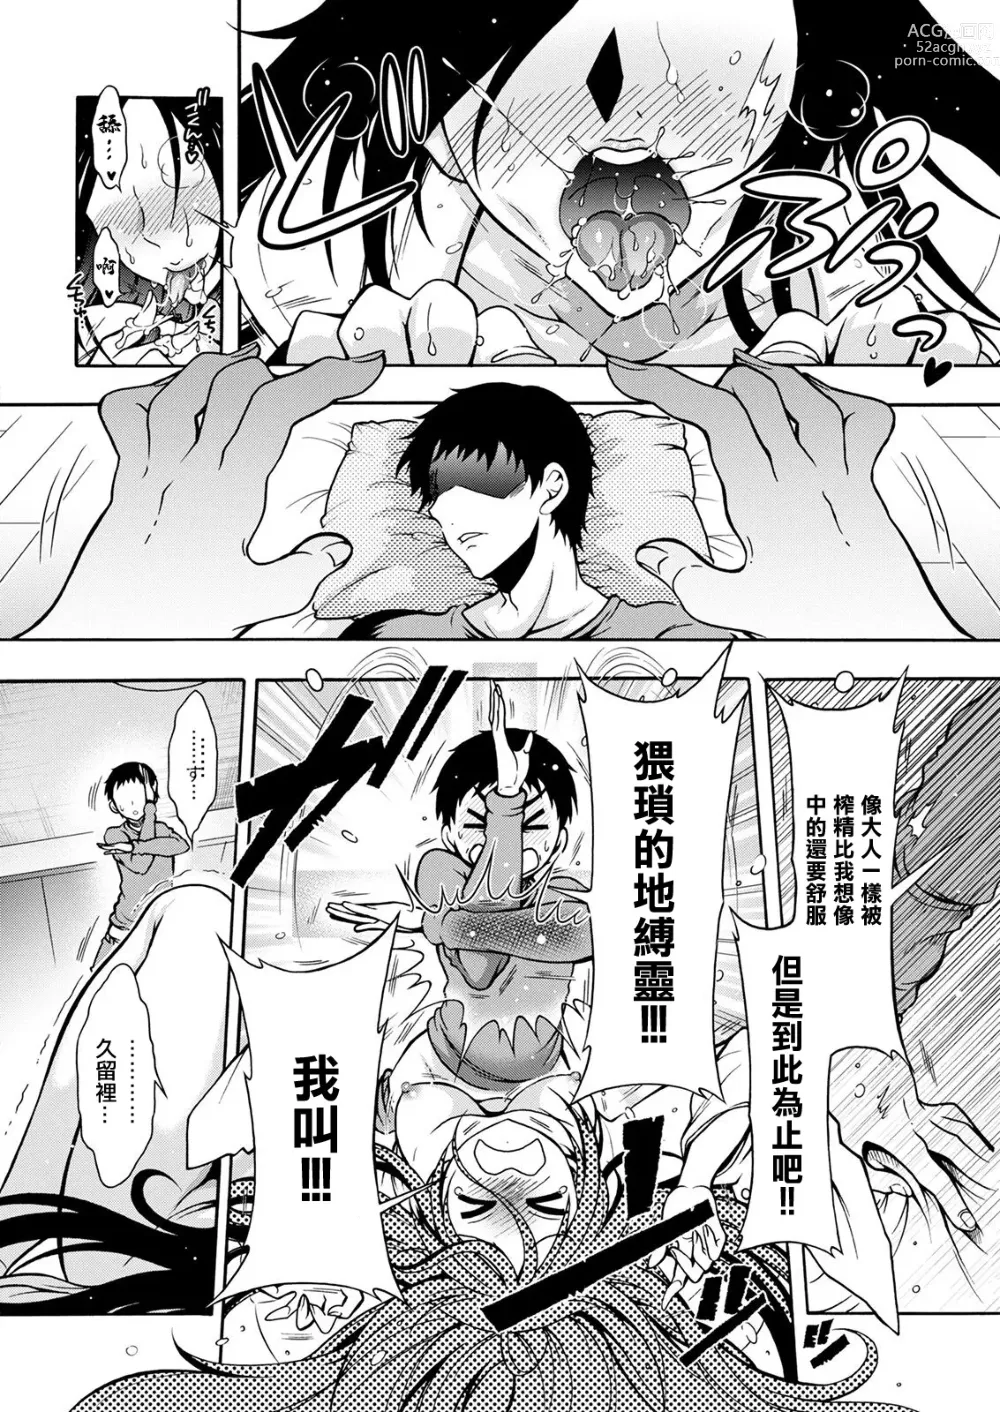 Page 8 of manga 妖怪HHH